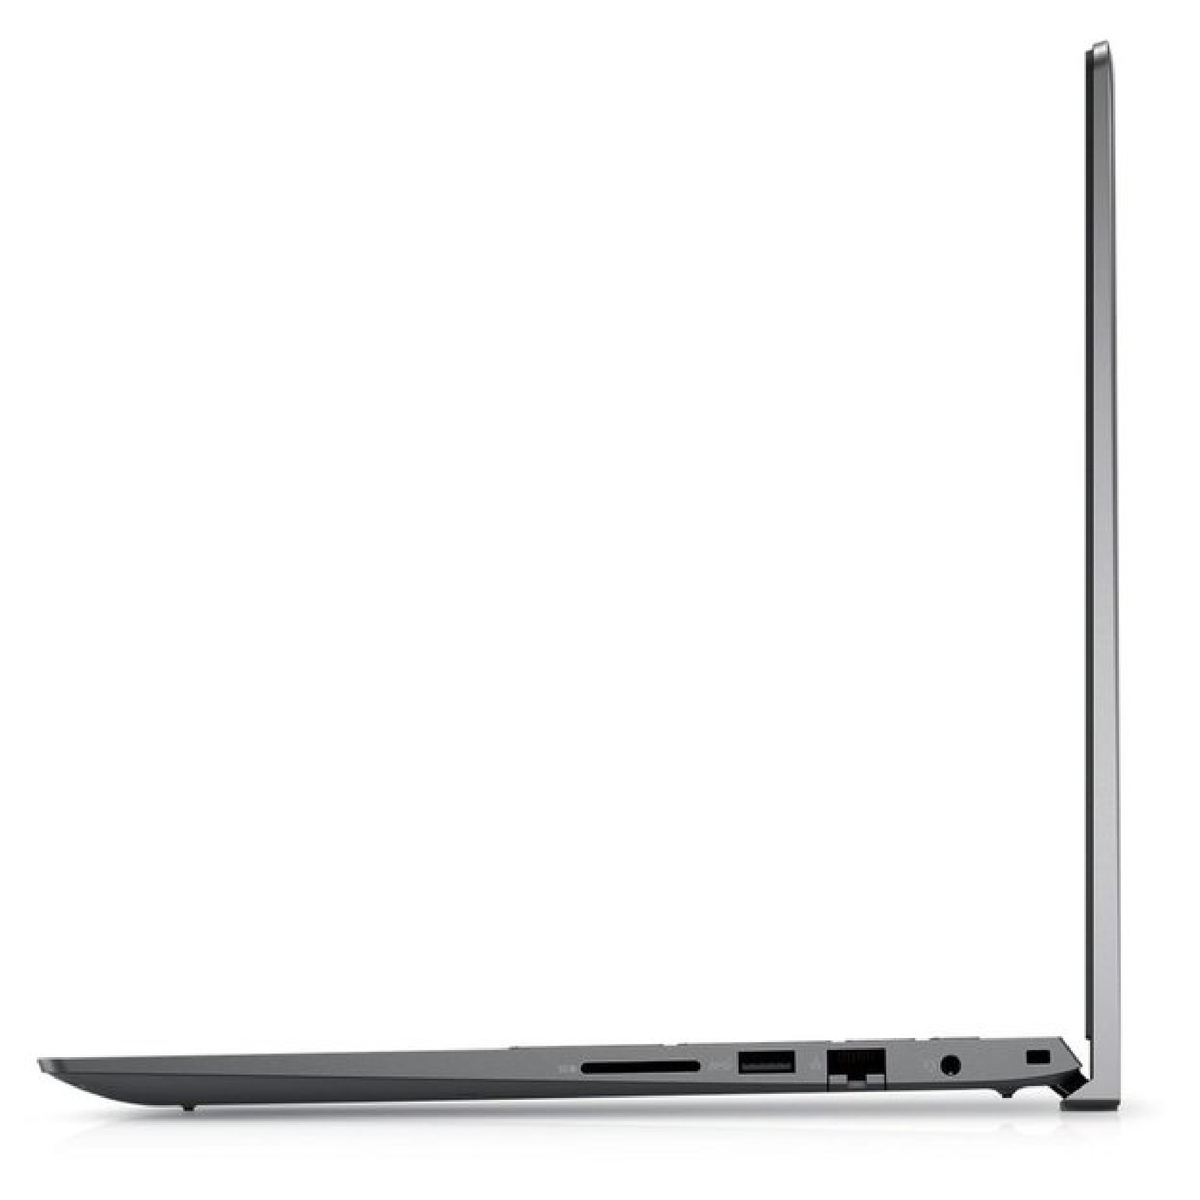 Dell Vostro (5402-VOS-5111-GRY) Laptop,Intel Core i5-1135G7,8GB RAM,512GB SSD,14inches FHD,Windows 11,Grey,English-Arabic Keyboard